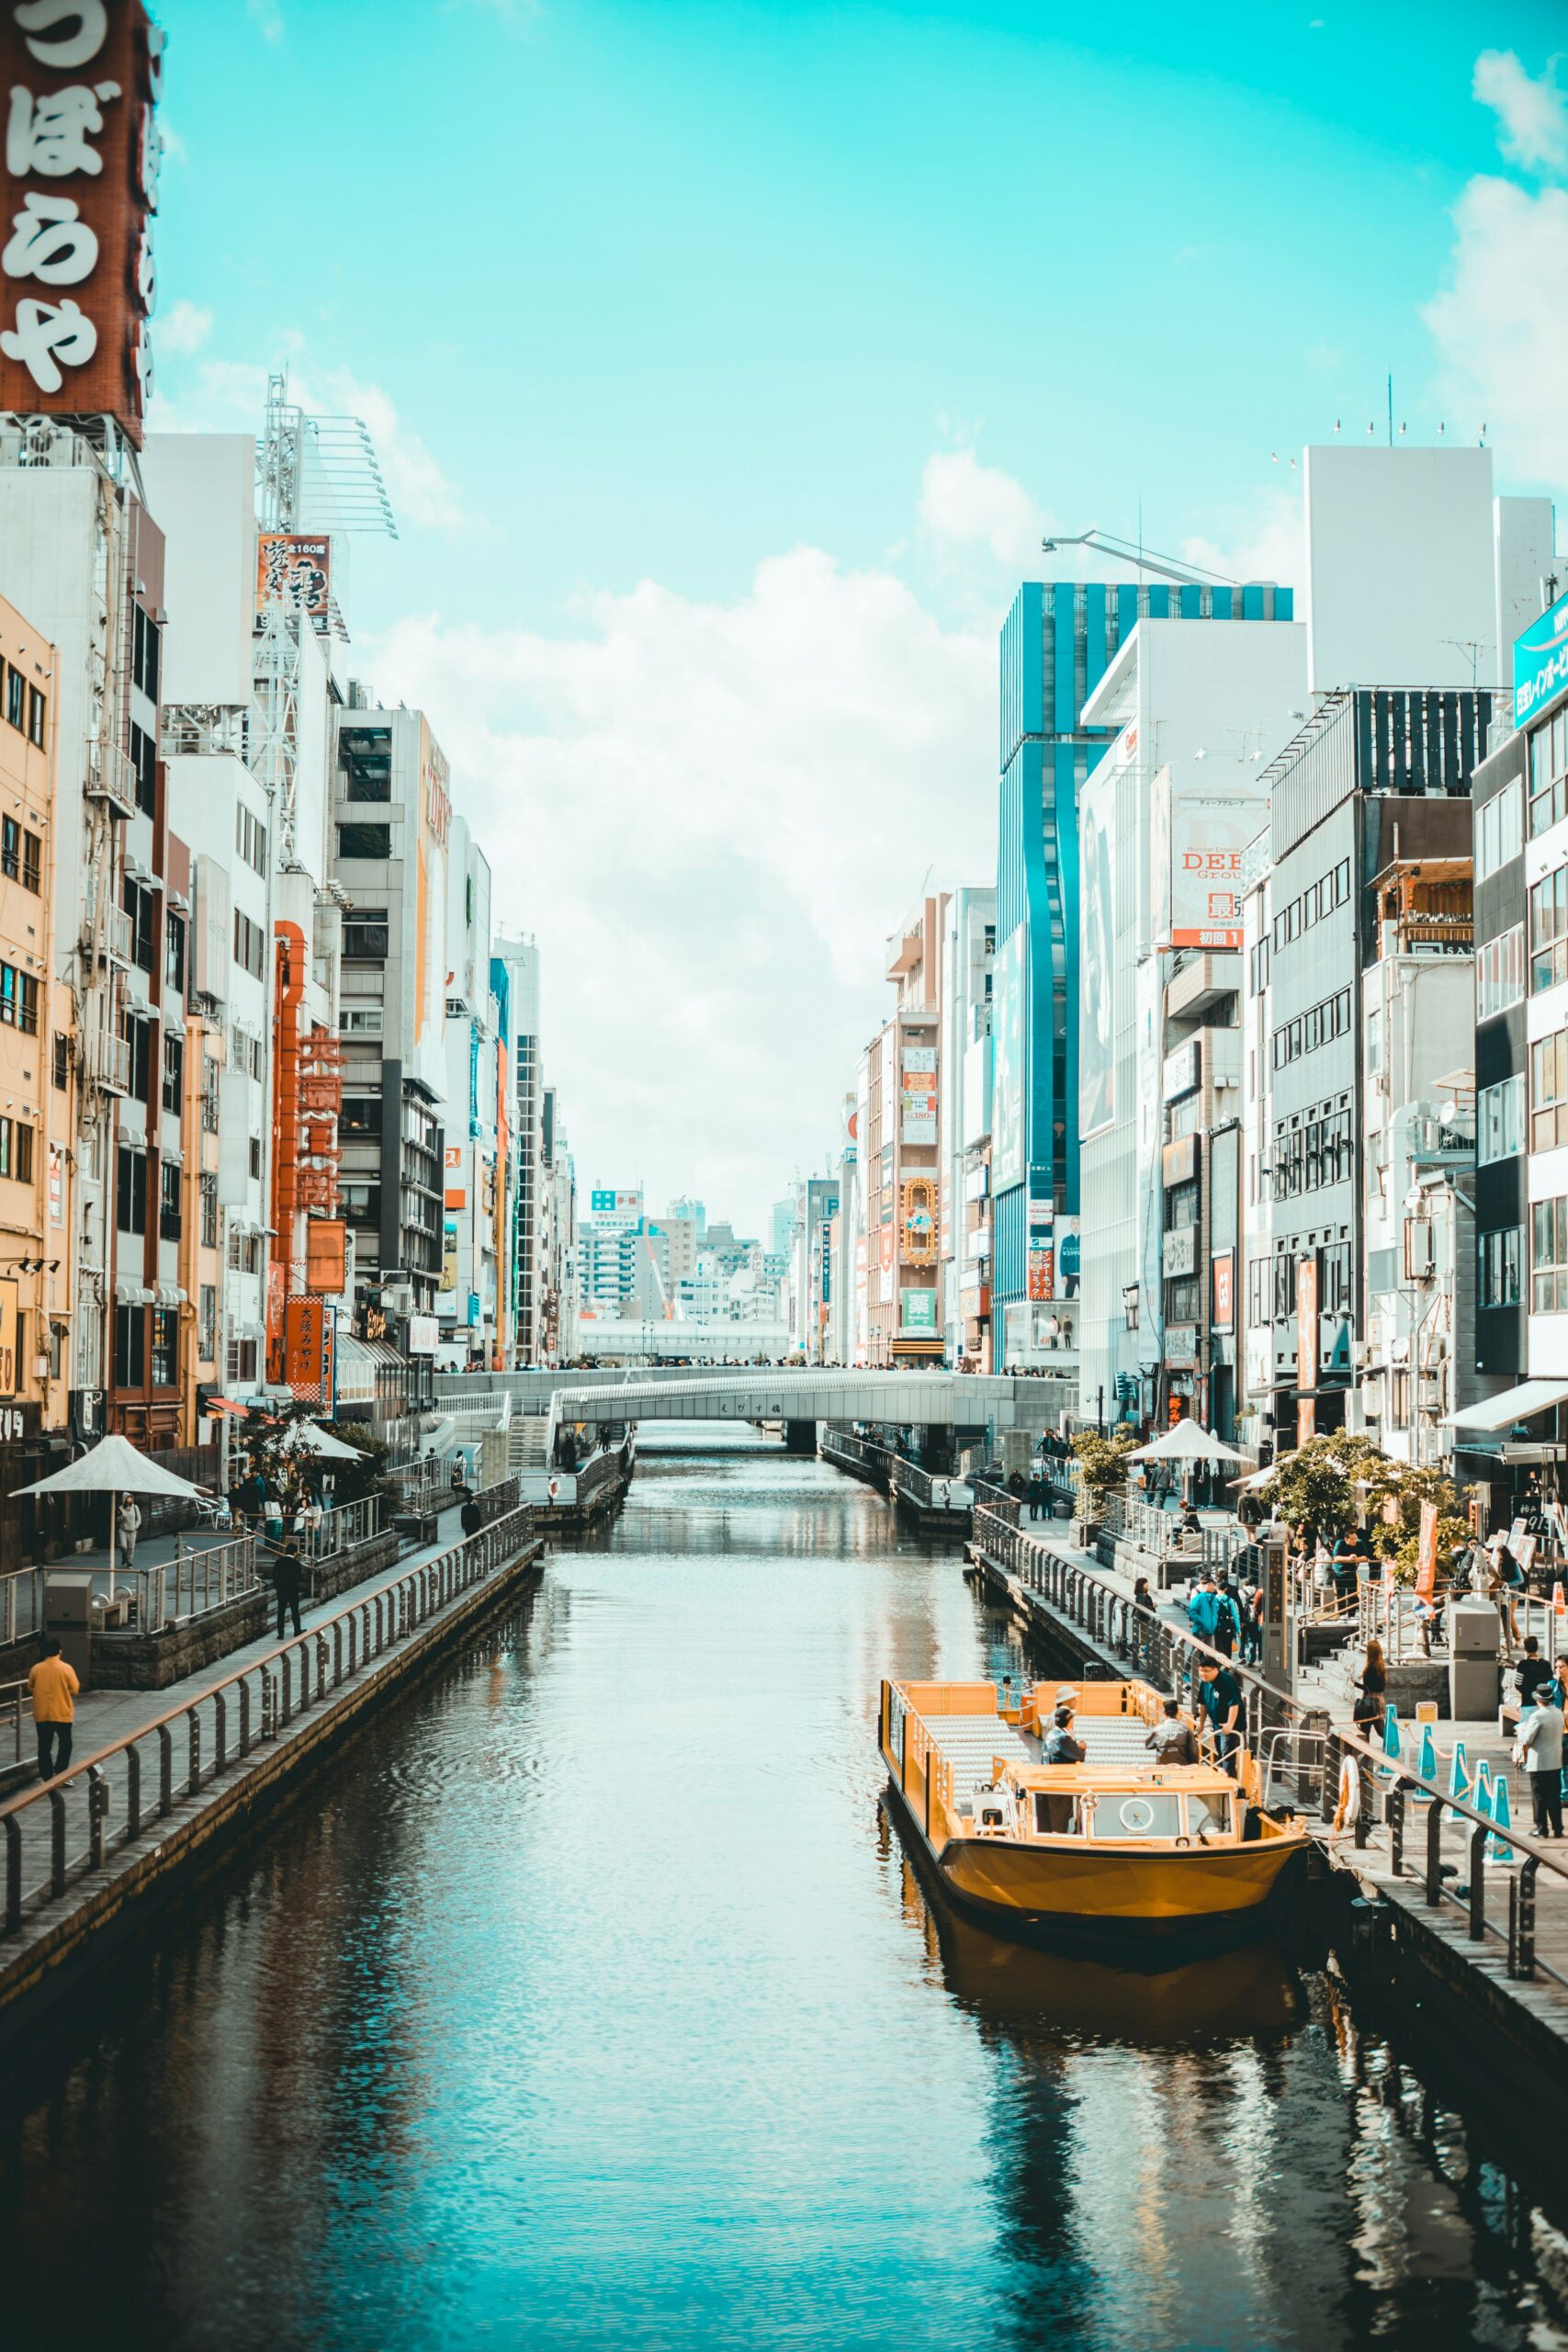 Osaka pode ser dividida entre seu lado moderno e seu lado histórico, os dois extremamente fascinantes.